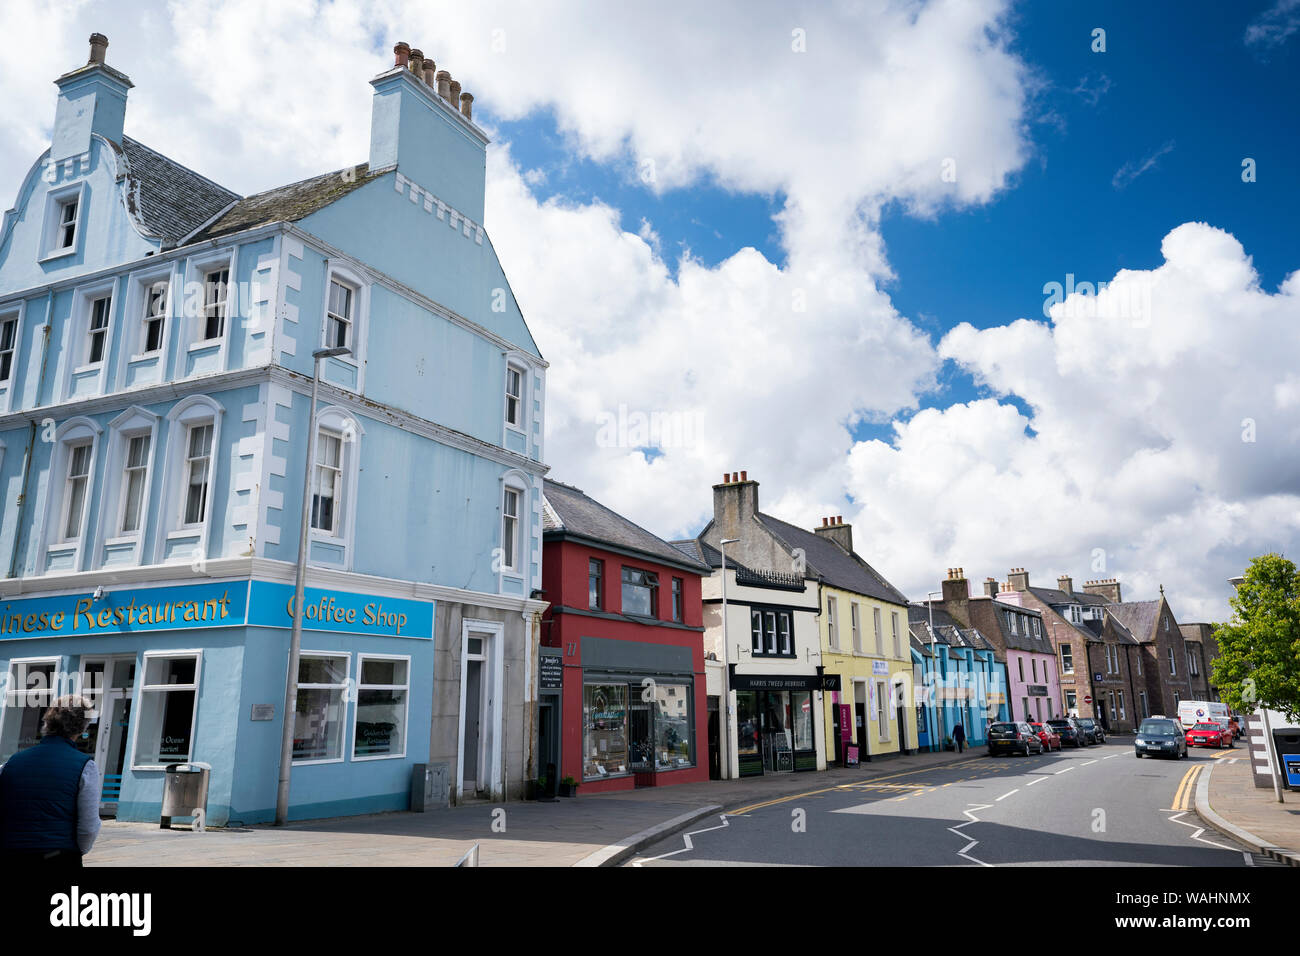 Scena di strada con negozi e caffè nella principale area turistica di Stornoway, la sola città dell'isola di Lewis, Scozia, Ebridi Esterne, REGNO UNITO Foto Stock